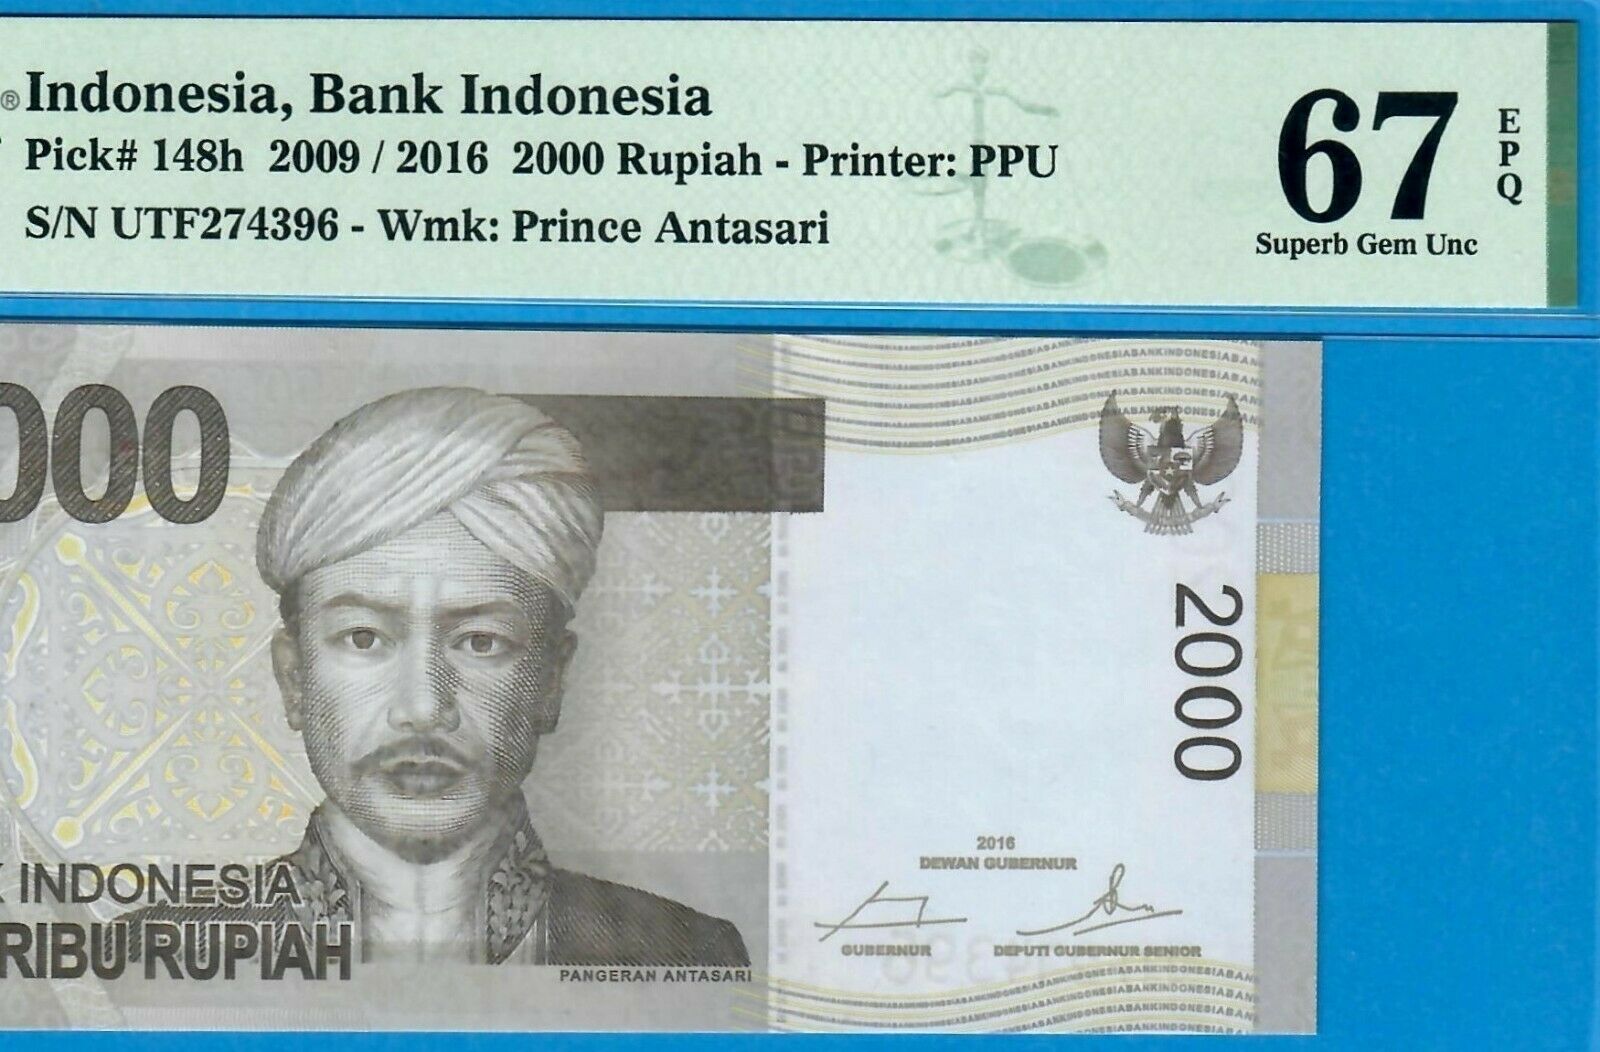 INDONESIA-2000 RUPIAH-2009 / 2016-PICK 148h **PMG 67 EPQ SUPERB GEM UNC**